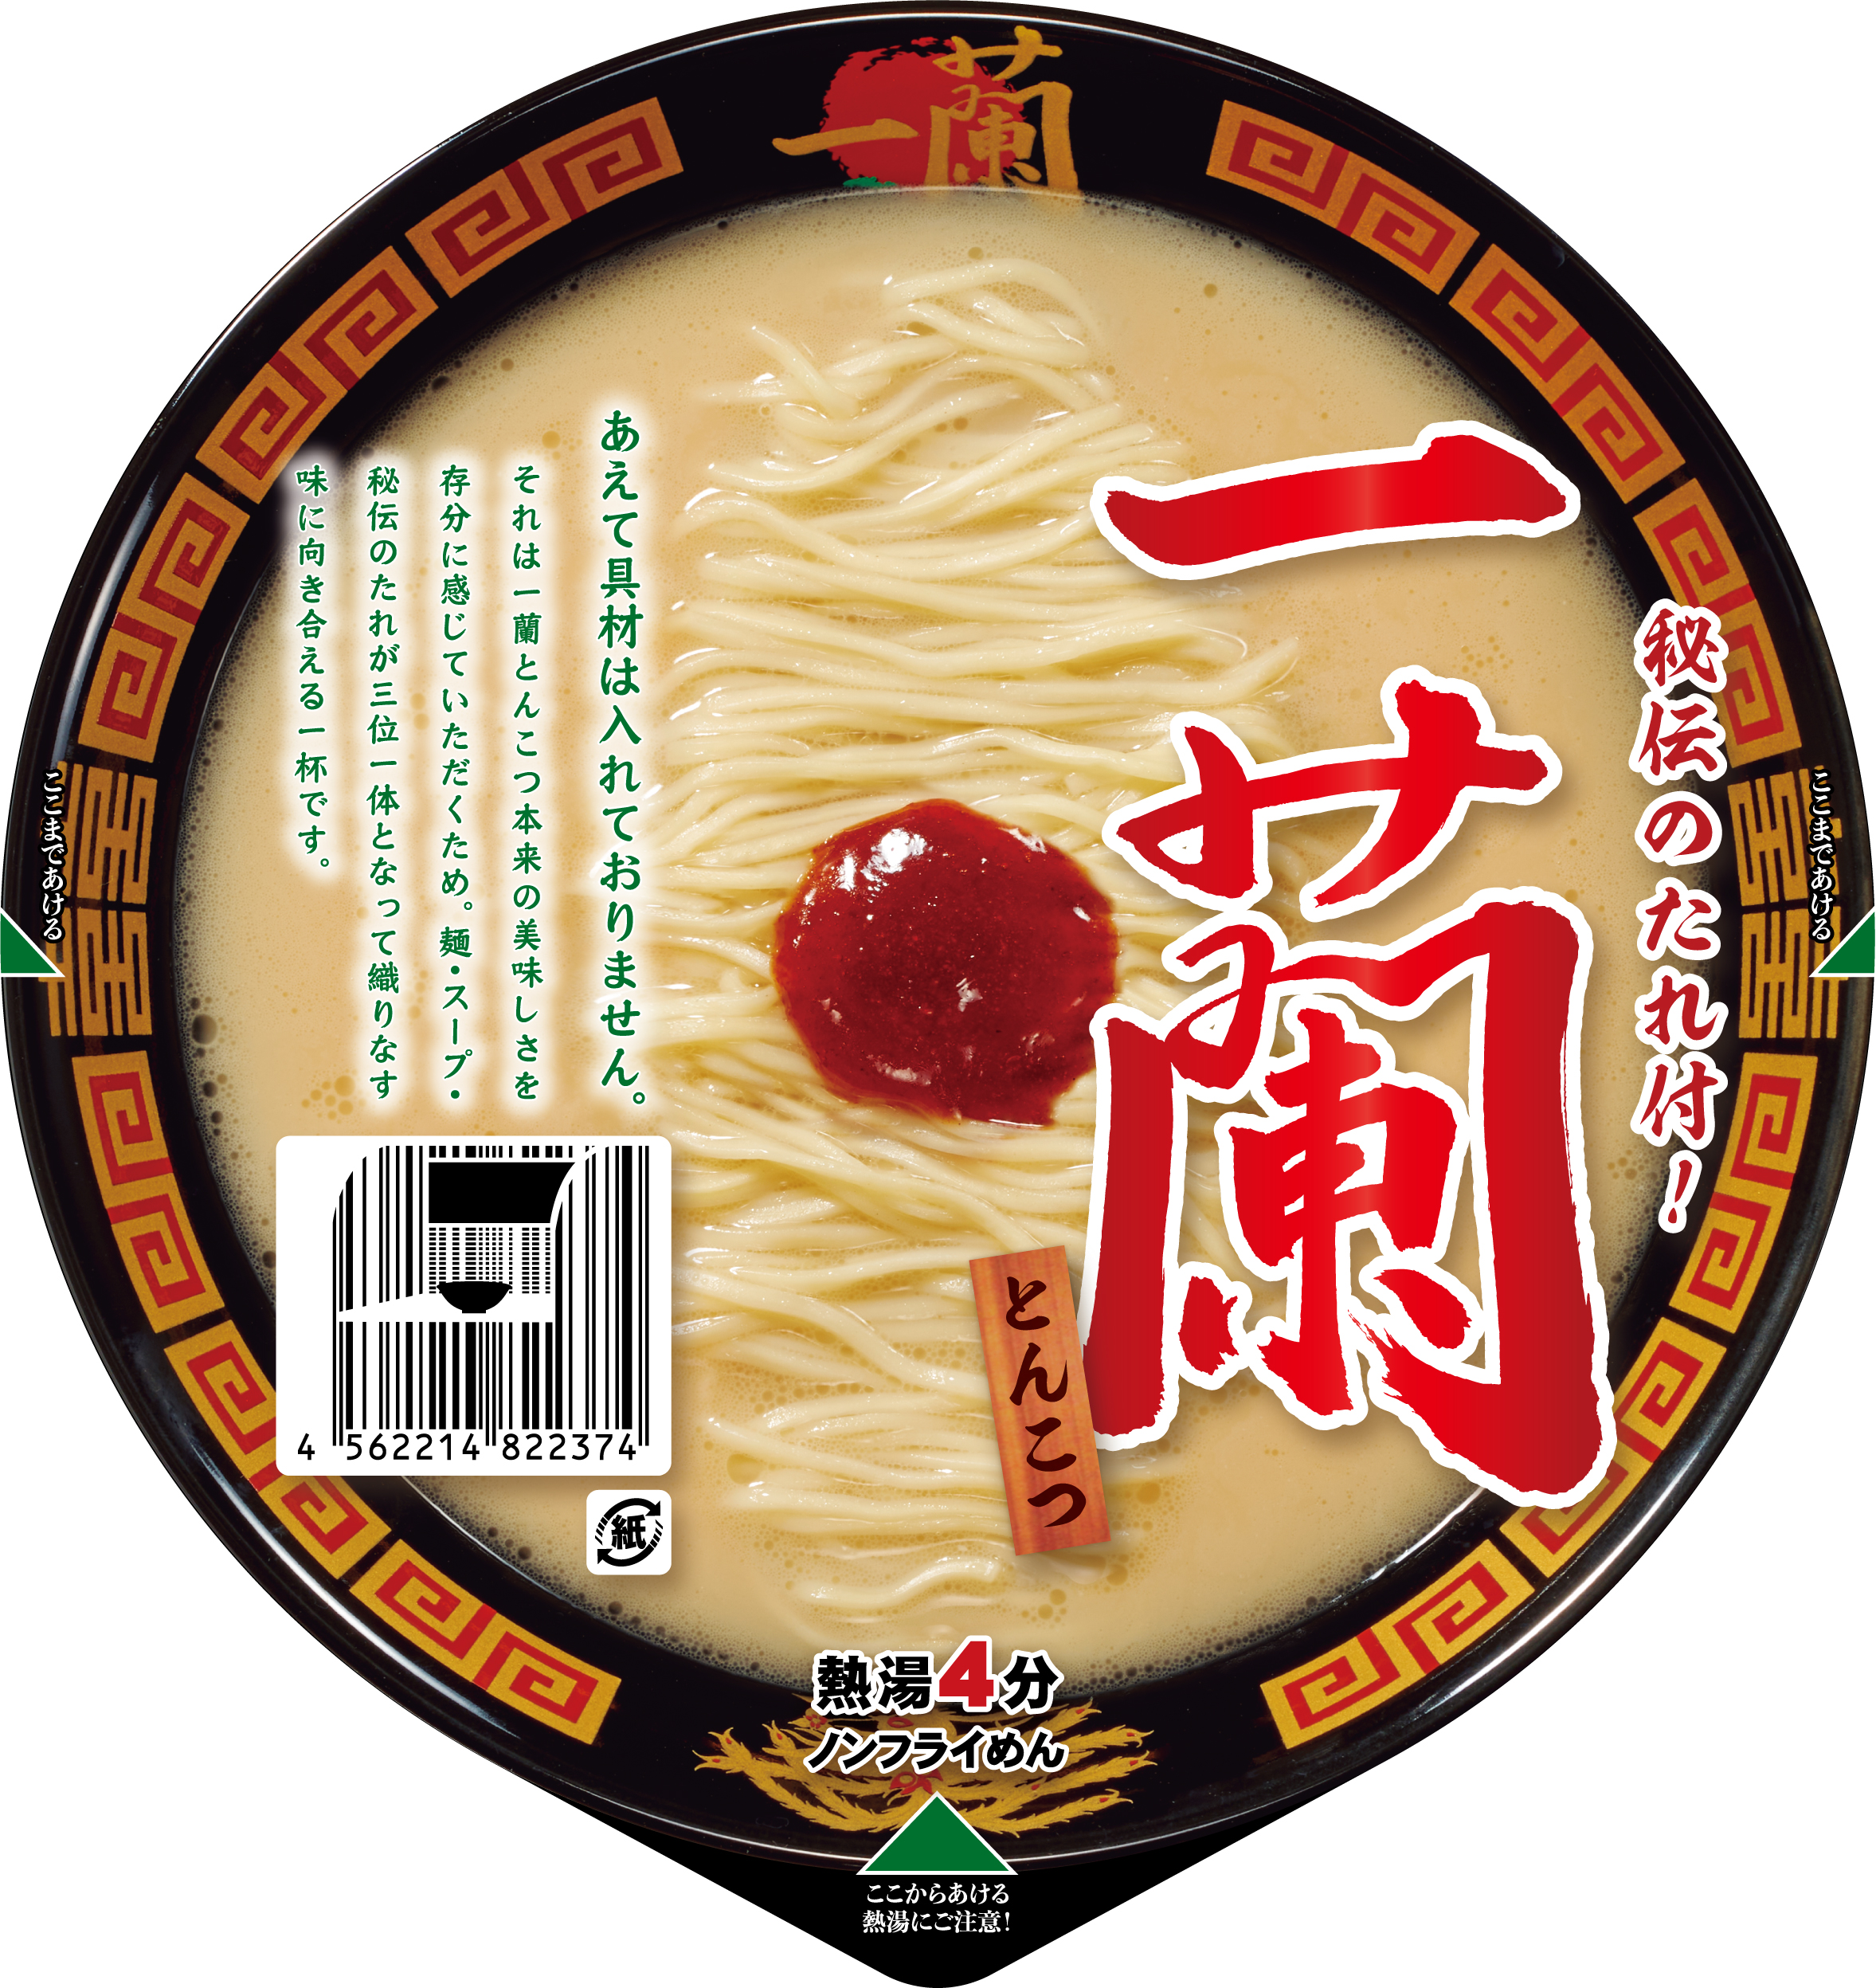 カップ麺「一蘭とんこつ」パッケージ イメージ